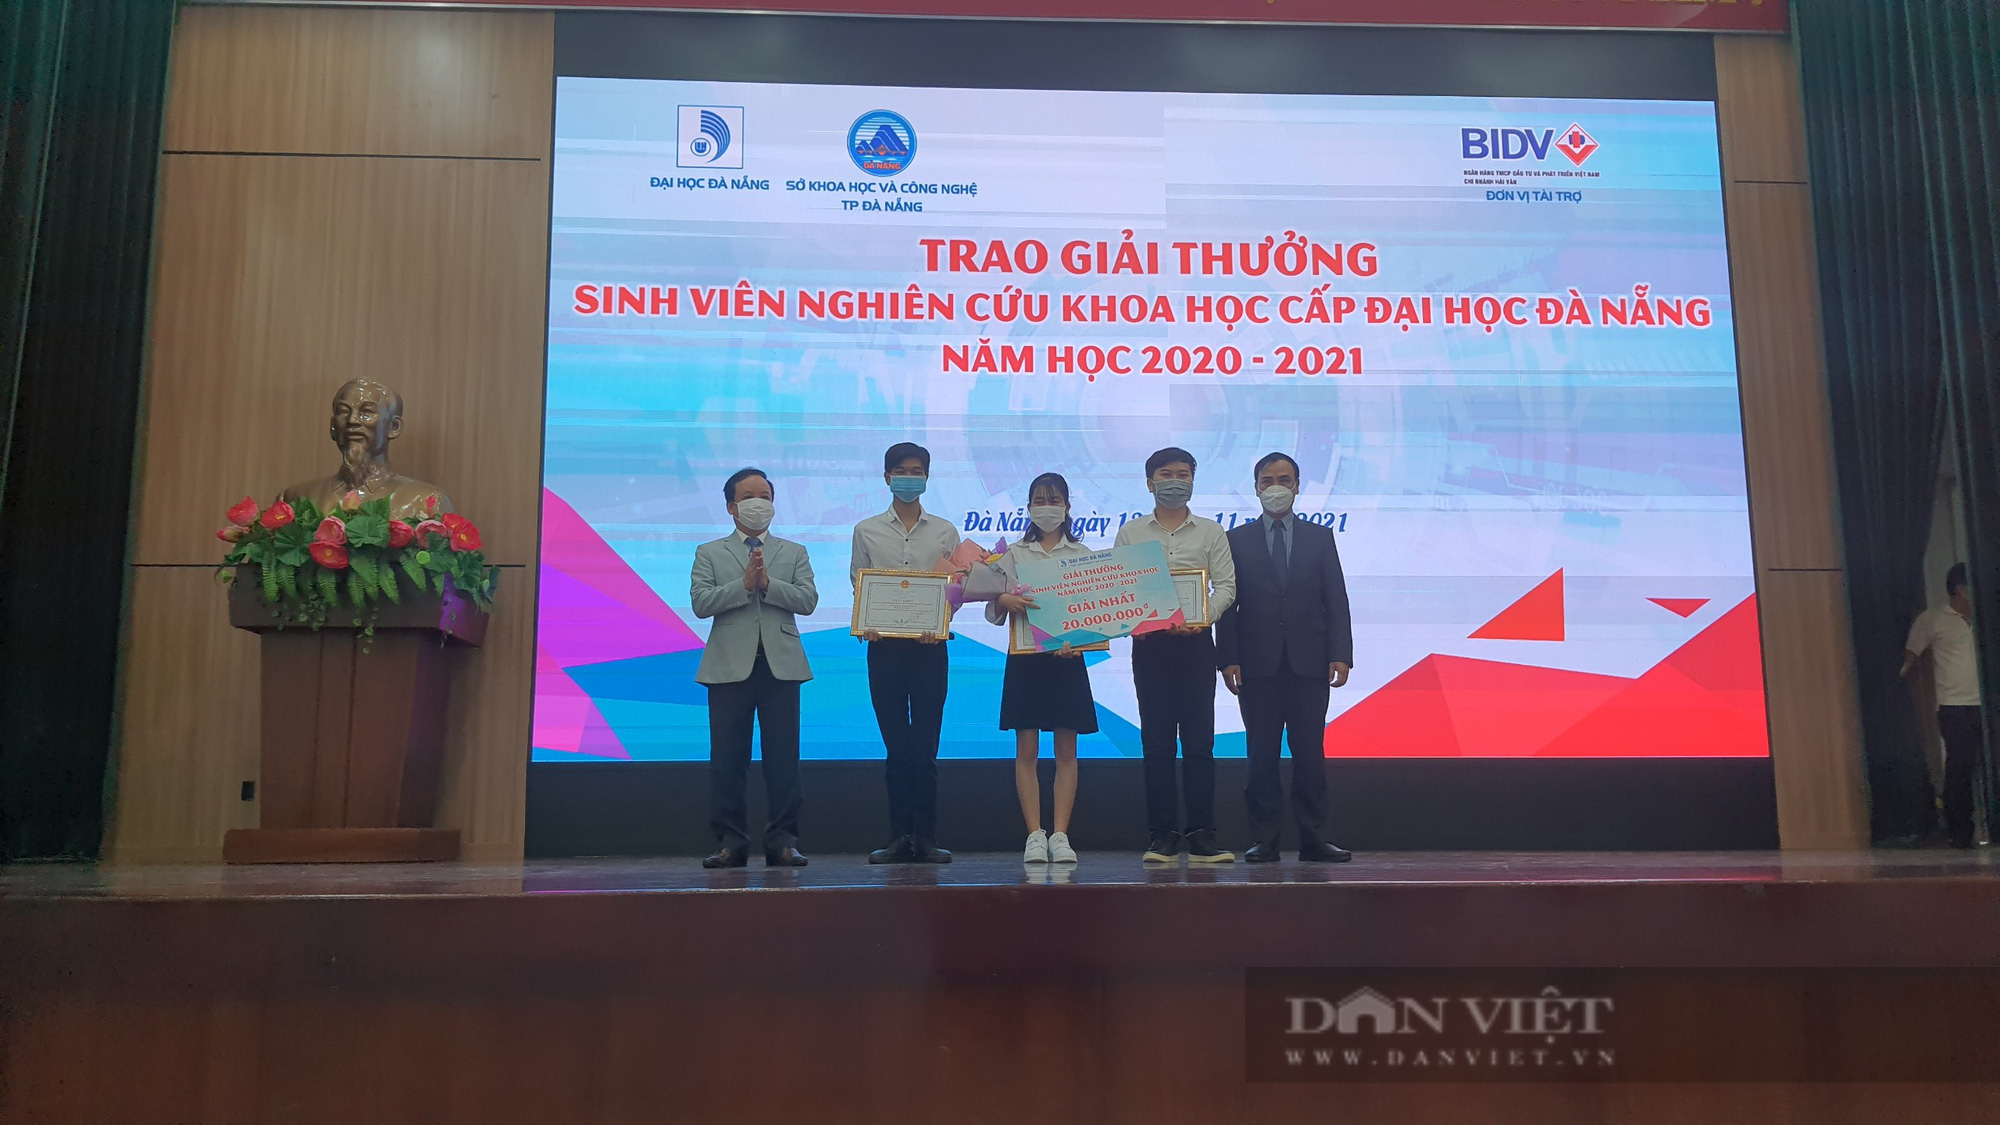 Festival Khoa học Công nghệ lần thứ 3, năm 2021: Sân chơi bổ ích cho sinh viên Đại học Đà Nẵng